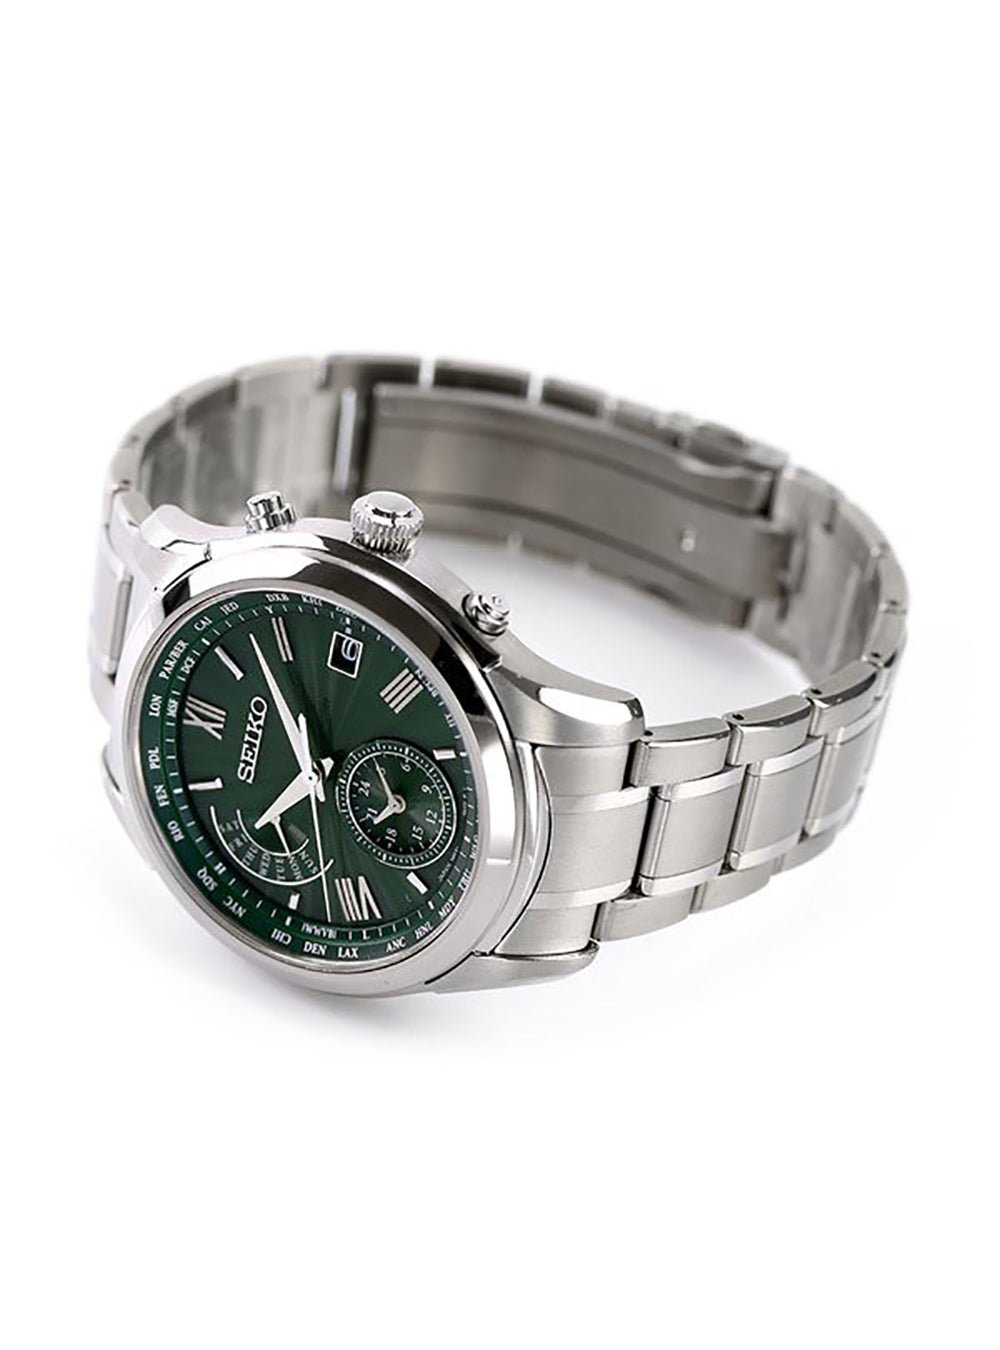 独創的 SEIKO - BRIGHTZ SAGA307 新品未使用 保証書有り セイコー SEIKO 腕時計(アナログ) - daloon.com